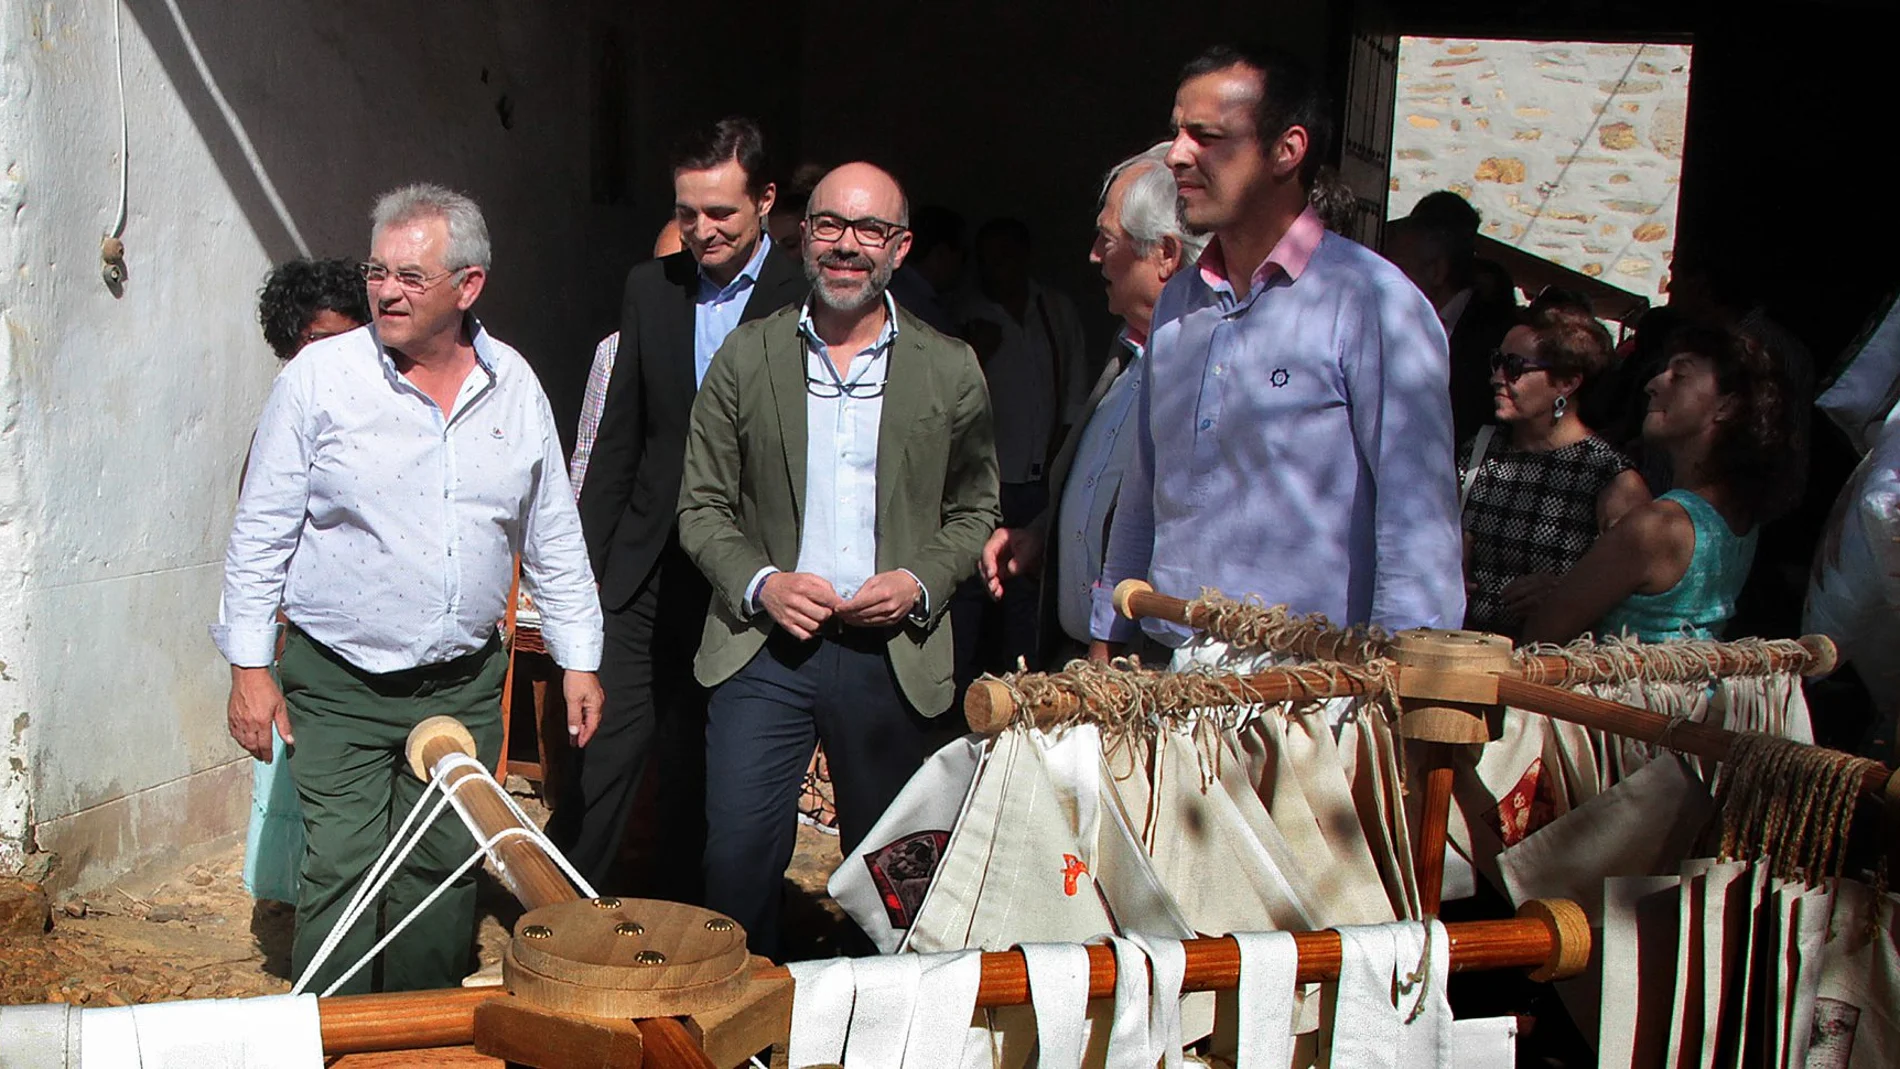 El consejero de Cultura y Turismo, Javier Ortega Álvarez, inaugura la Feria Artesanal Patios Maragatos en Santa Colomba de Somoza (León), acompañado por el alcalde. José Miguel Nieto y el comisario de artesanía, Antonio Milara